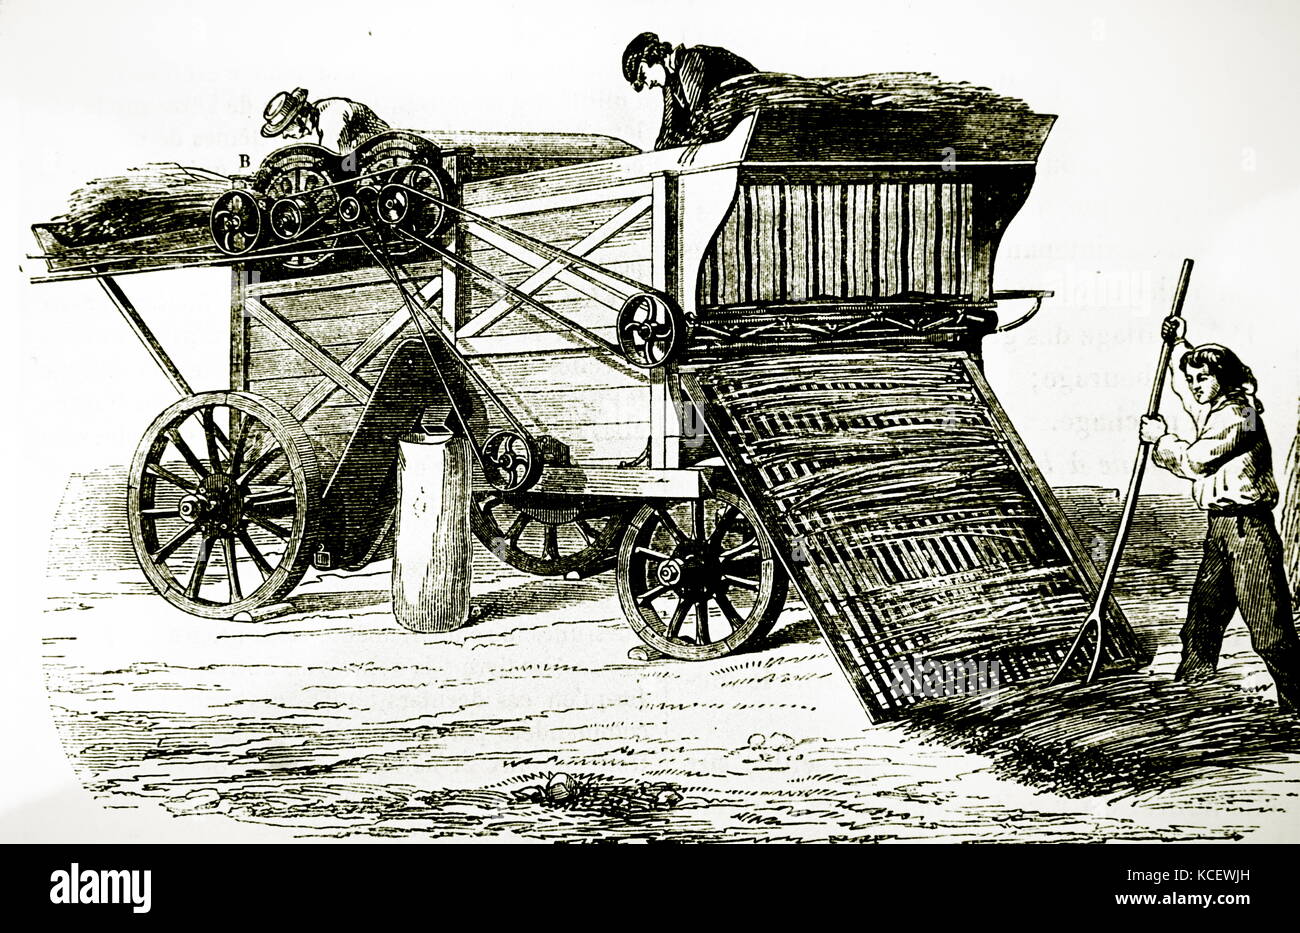 Grabado representando un vapor de trilla impulsado por la máquina. Fecha del siglo XIX Foto de stock